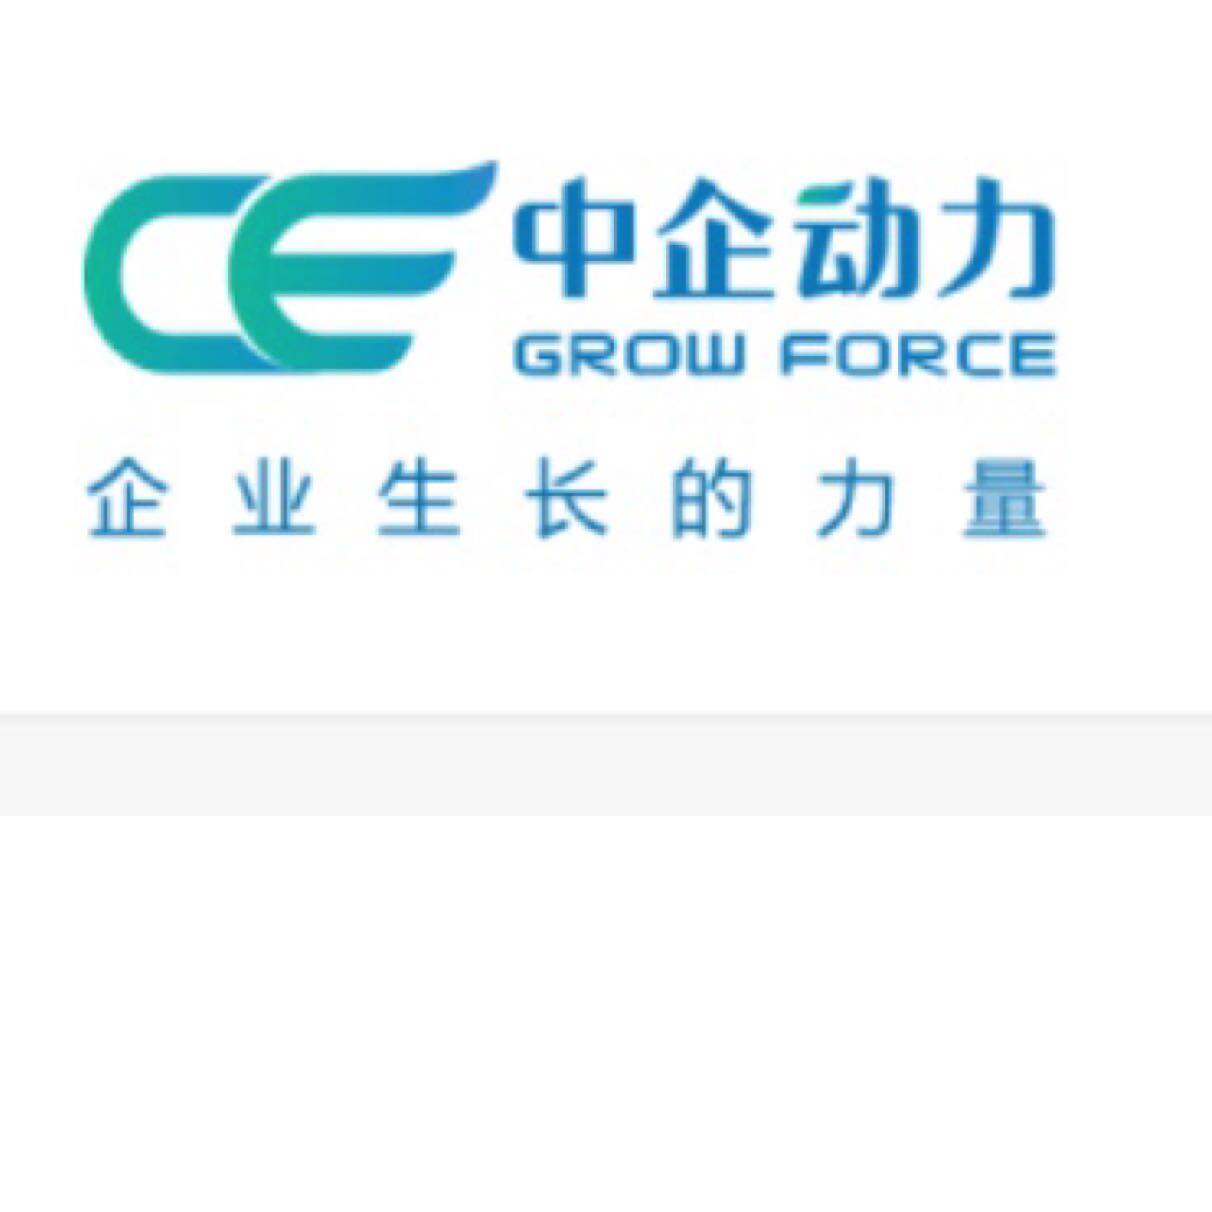 中企动力科技股份有限公司济南分公司